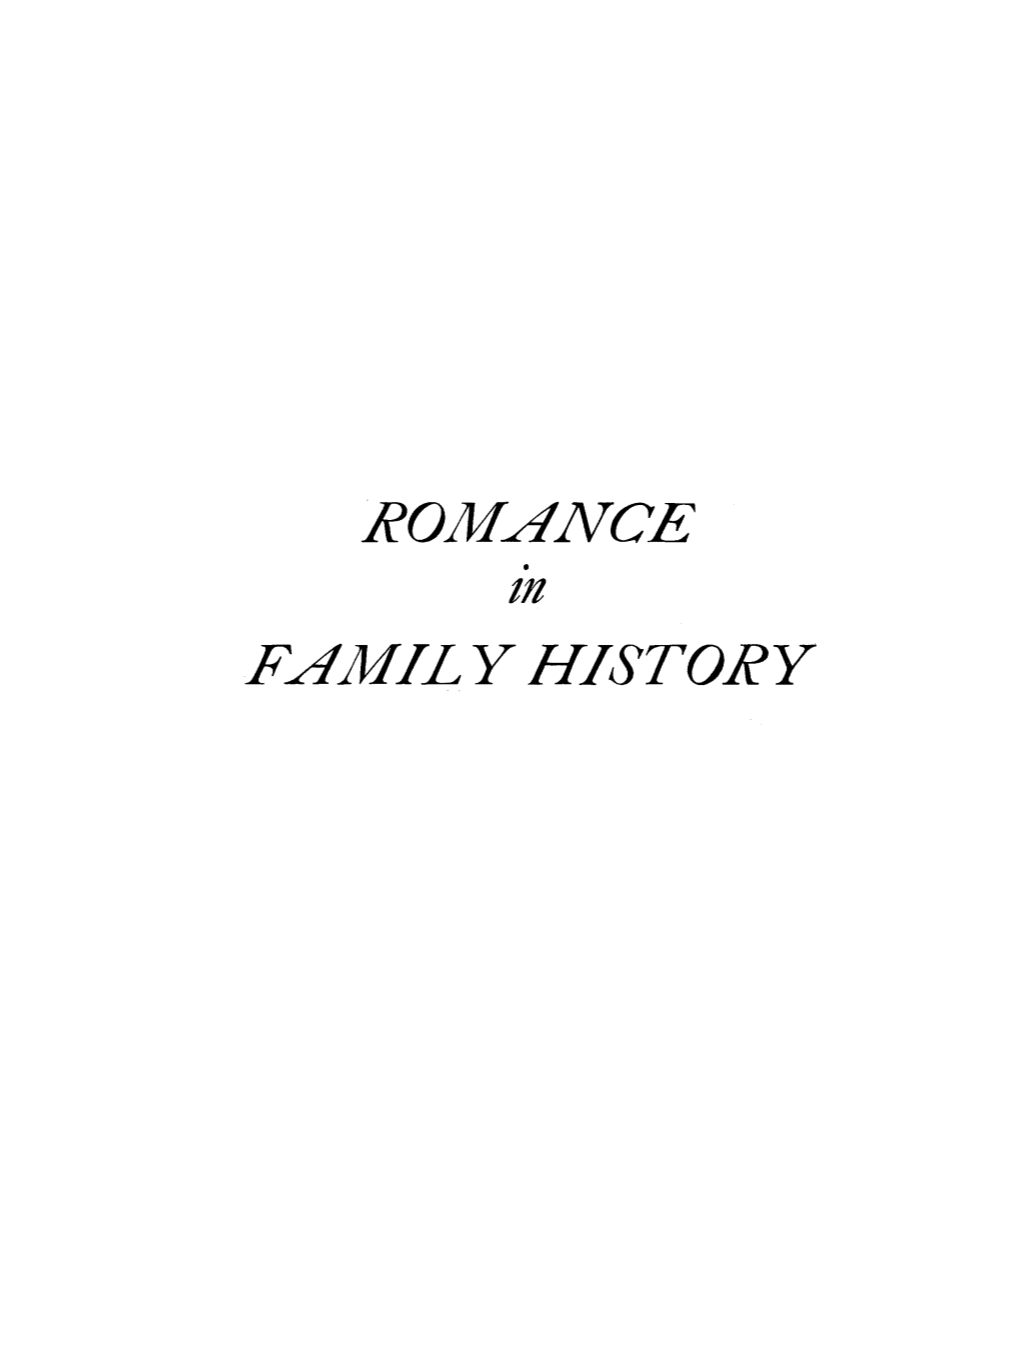 Romance Family History